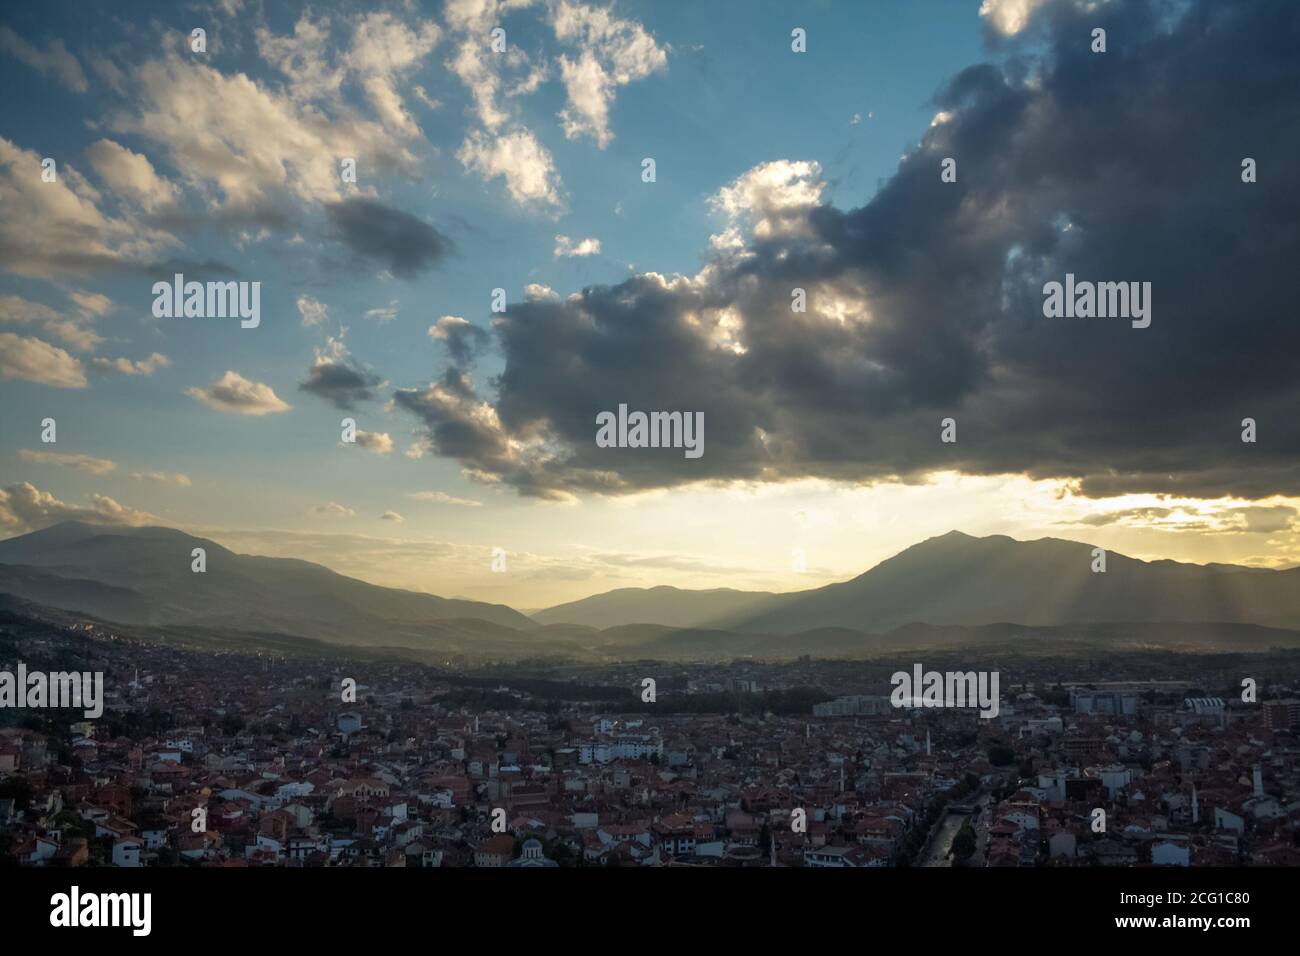 Panorama auf das Stadtzentrum von Prizren, Kosovo, mit Minaretten von Moscheen und dem Fluss Bistrica. Prizren ist die zweitgrößte Stadt des Kosovo und eine mA Stockfoto